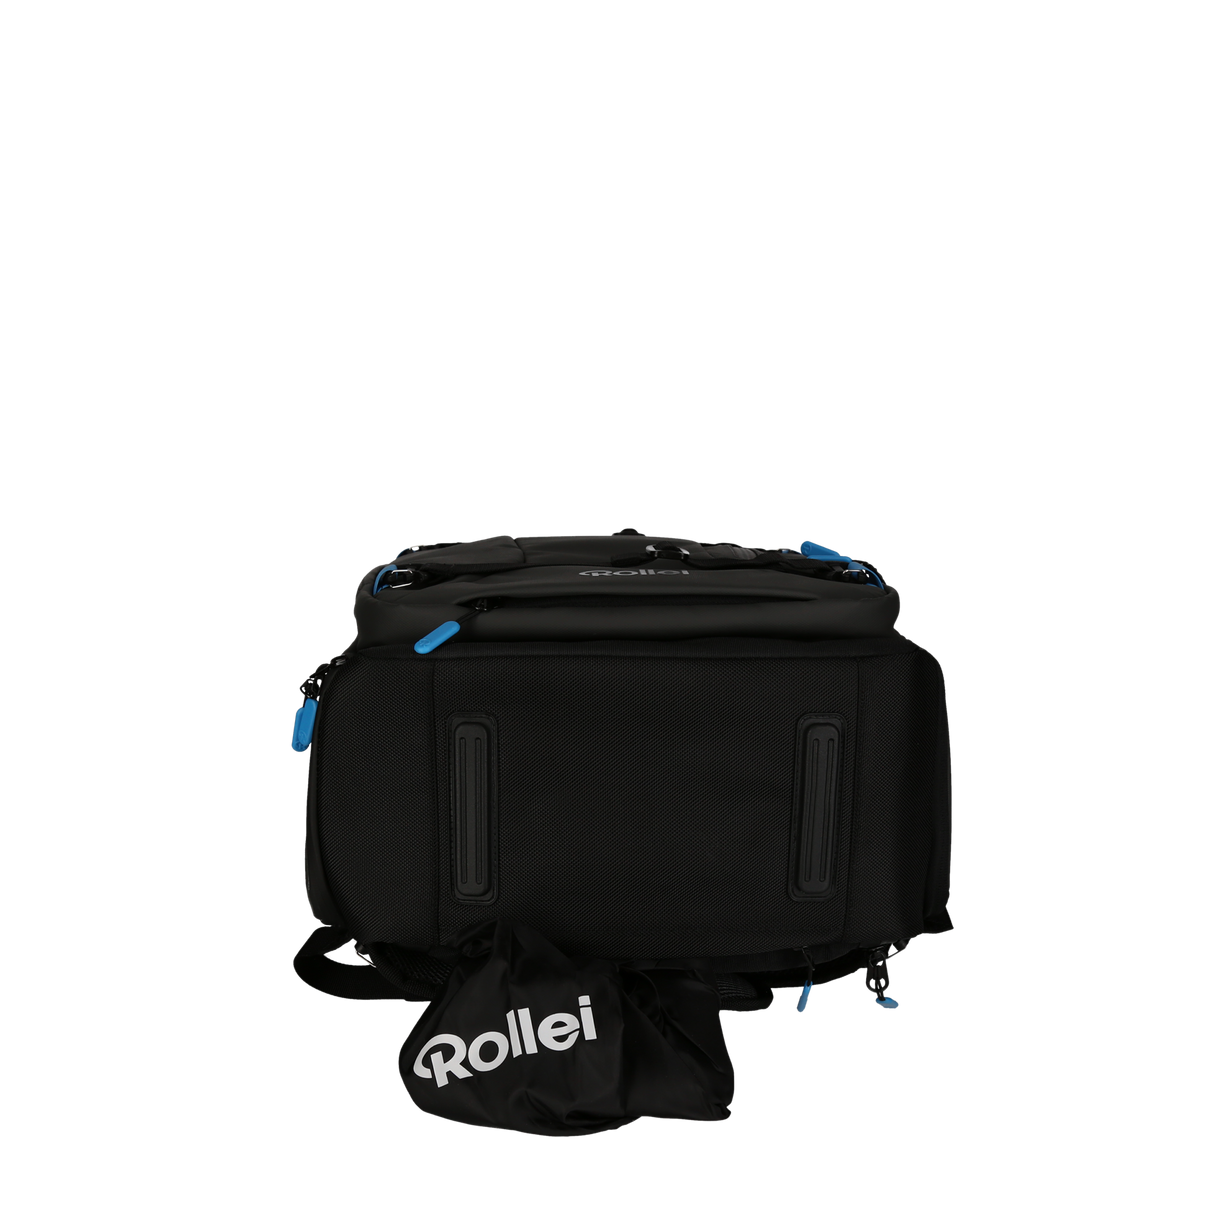 Photo backpack Fotoliner Ocean Pro